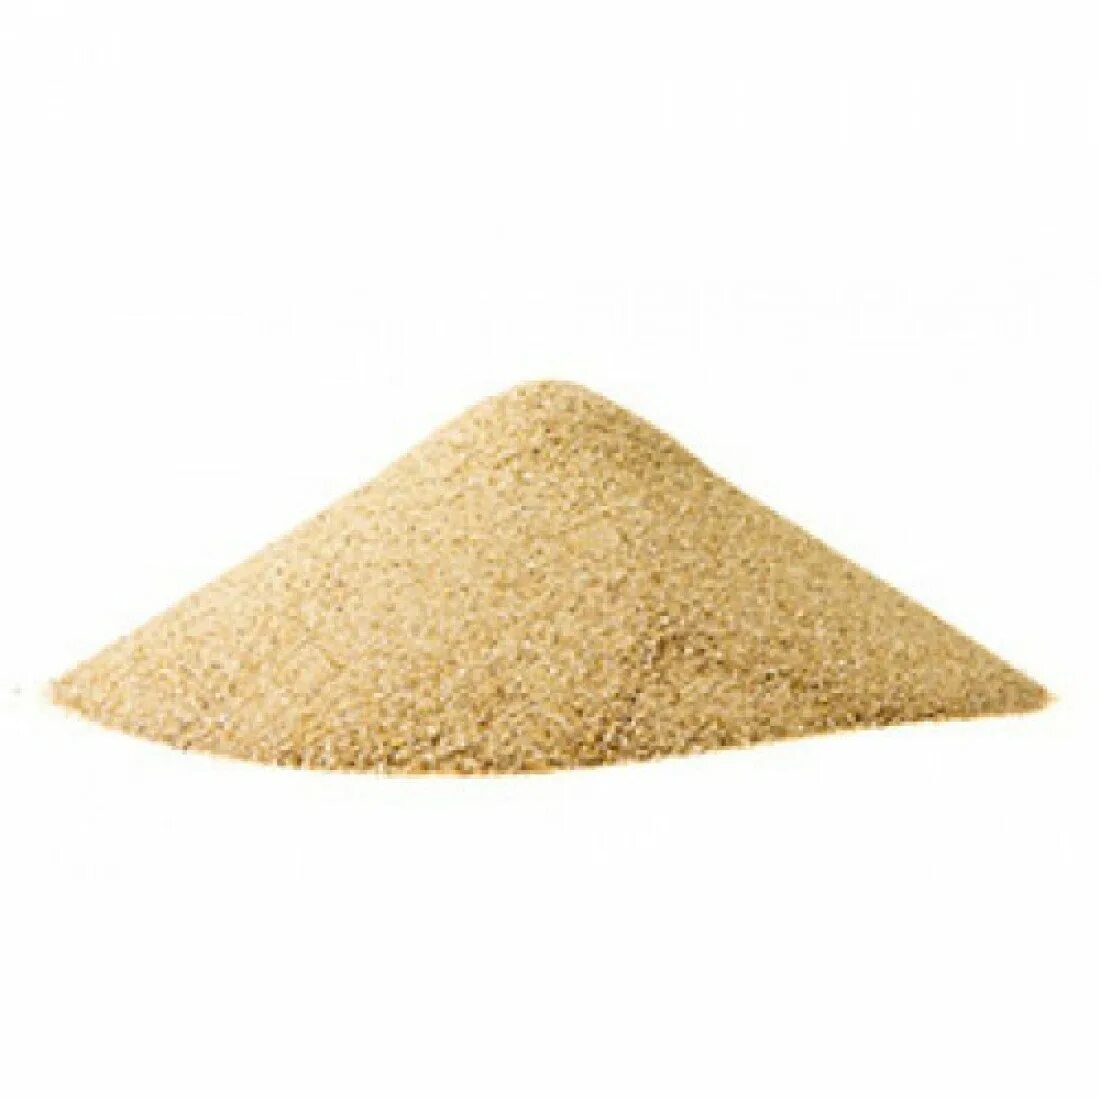 Купить щебень в леруа мерлен. Кварцевый песок. Куча песка. Песок сеяный. Кучка песка.